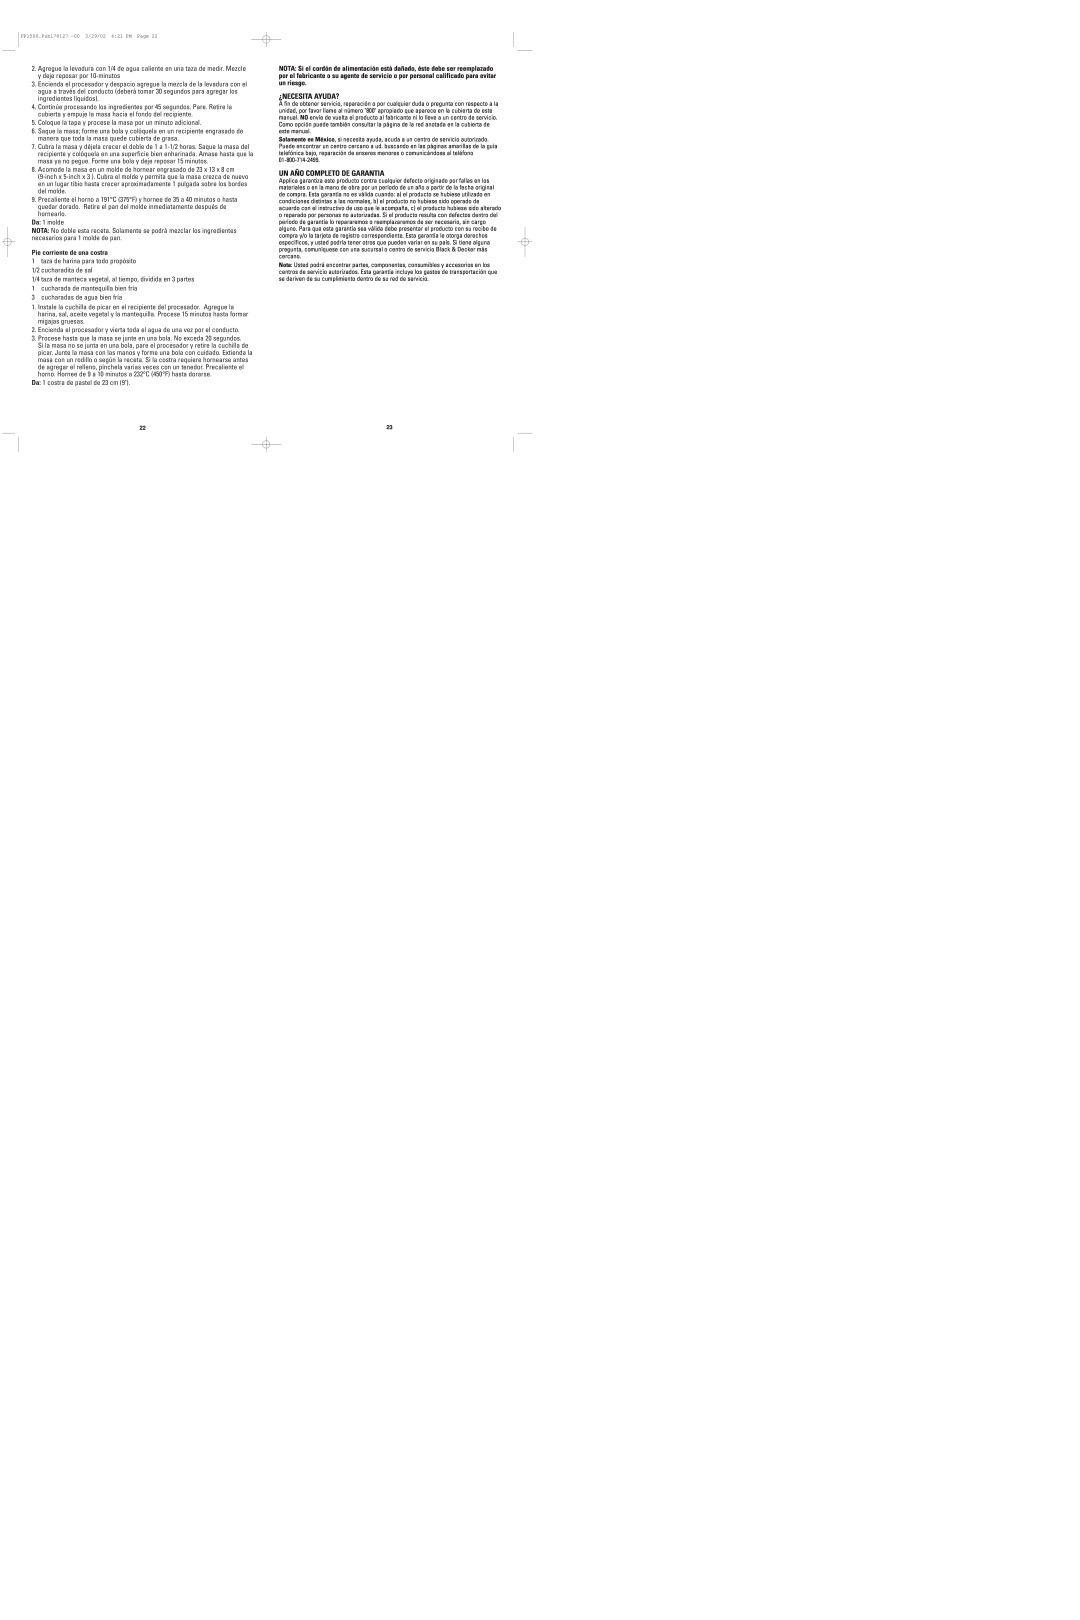 Black & Decker FP1500 manual ¿Necesita Ayuda?, Un Año Completo De Garantia, Pie corriente de una costra 